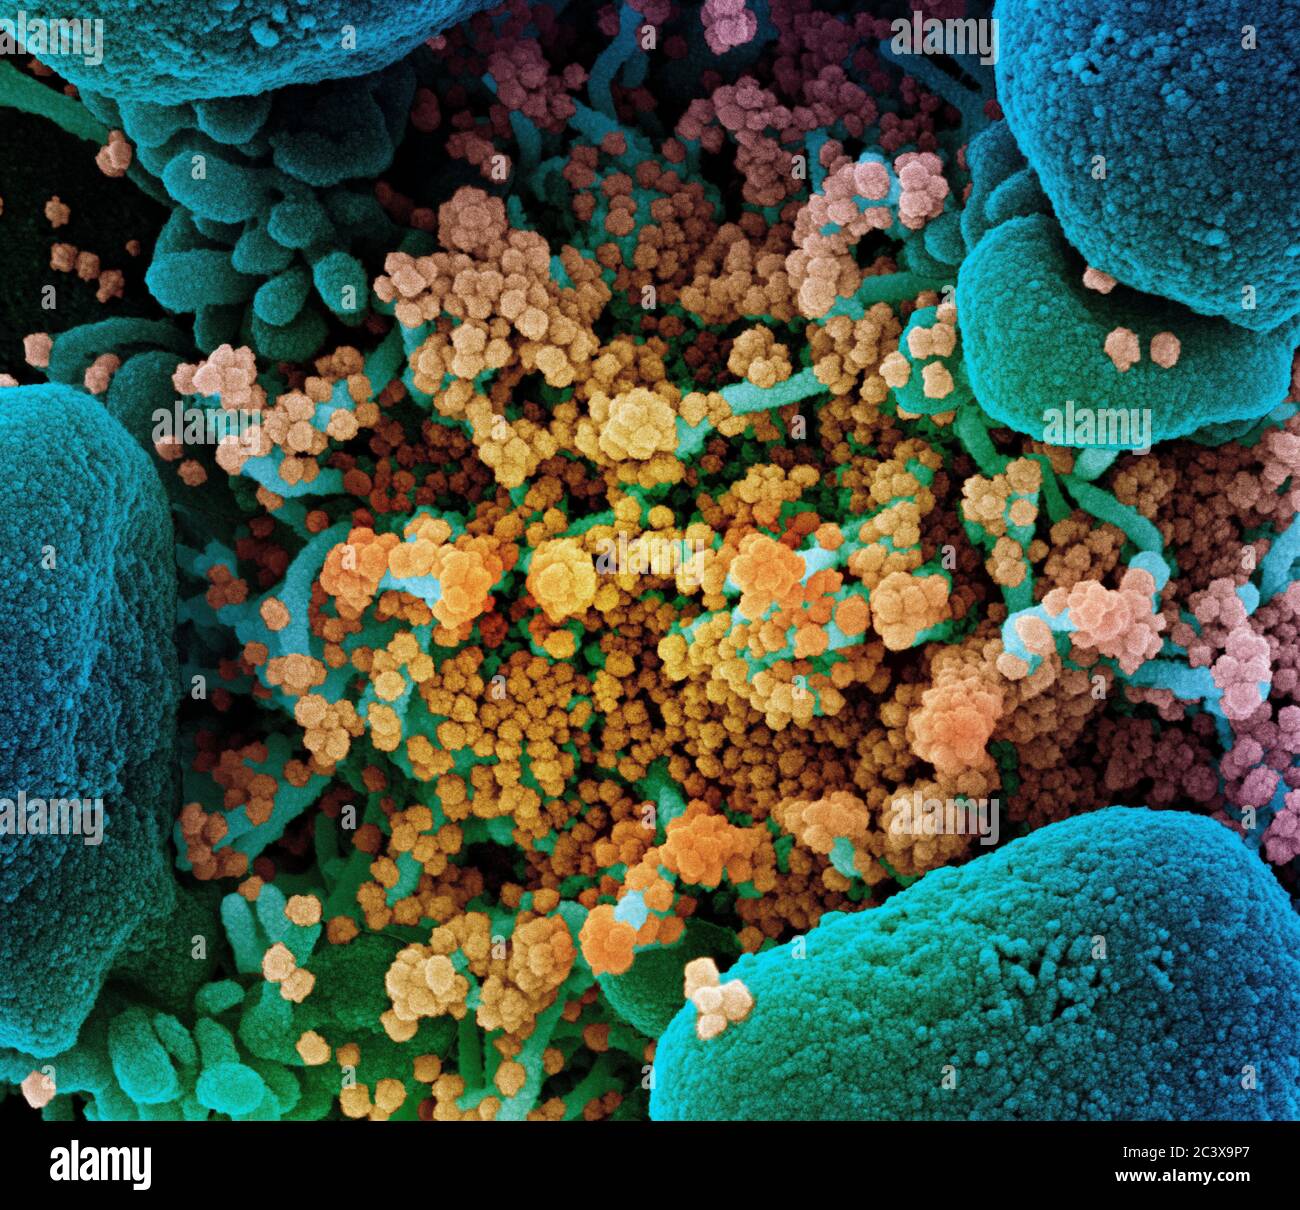 Neues Coronavirus SARS-CoV-2 Koloriertes Rasterelektronenmikroskopisch einer Apoptose (blau), die mit SARS-COV-2-Viruspartikeln (gelb) stark infiziert ist und aus einer Patientenprobe isoliert wurde. Aufnahme in der NIAID Integrated Research Facility (IRF) in Fort Detrick, Maryland. Stockfoto